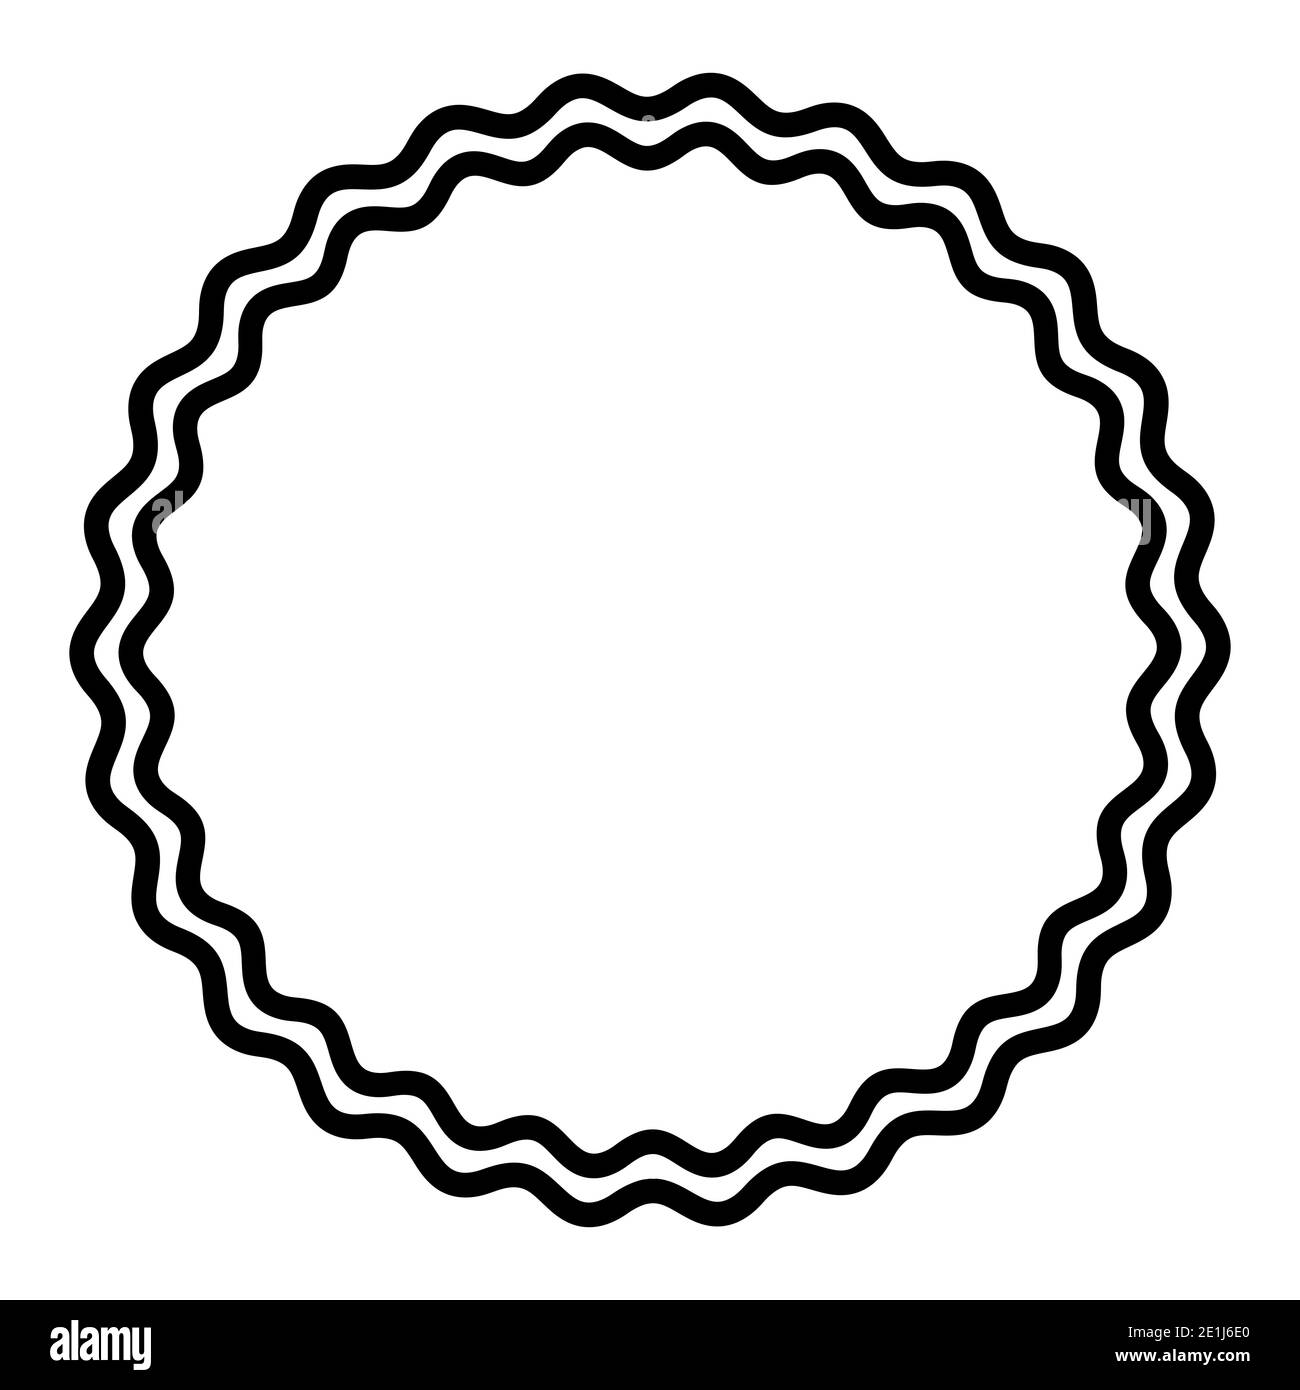 Deux lignes ondulées en gras formant un cadre de cercle noir. Cadre circulaire, constitué de deux lignes en serpentin noires. Cadre circulaire semblable à un serpent, cadre décoratif. Banque D'Images